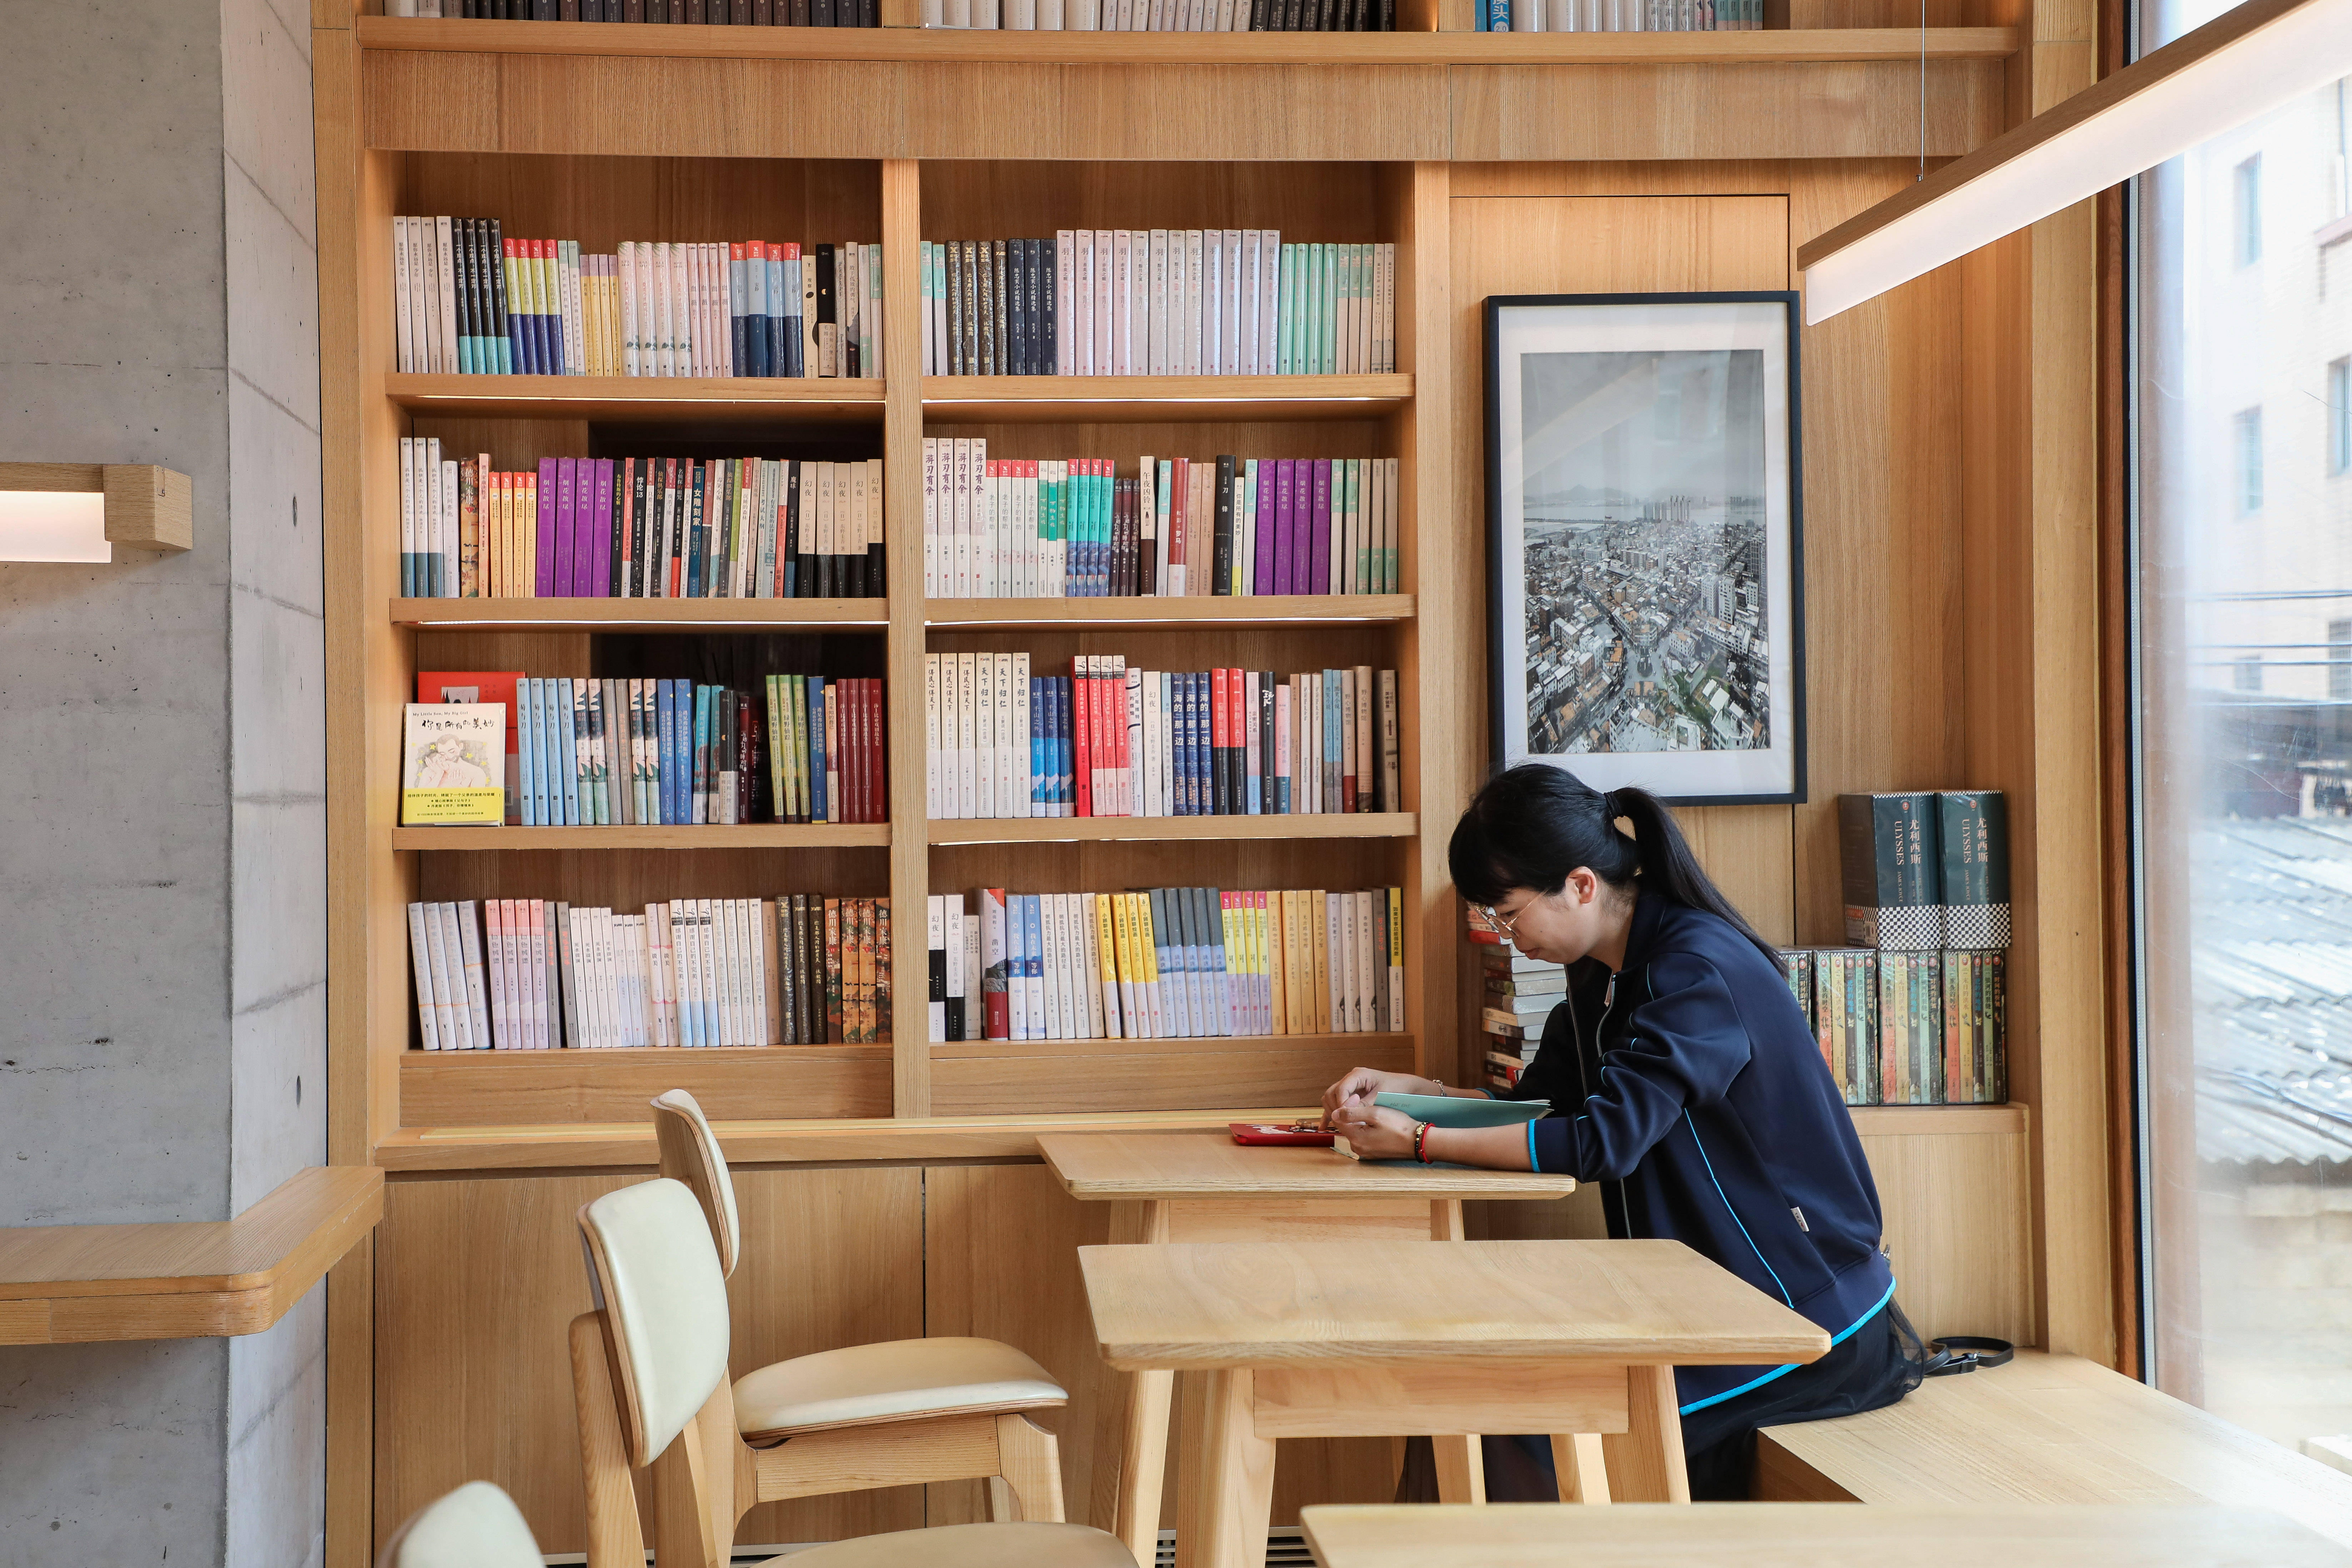 福建晋江:母亲的房子图书馆正式对外开放